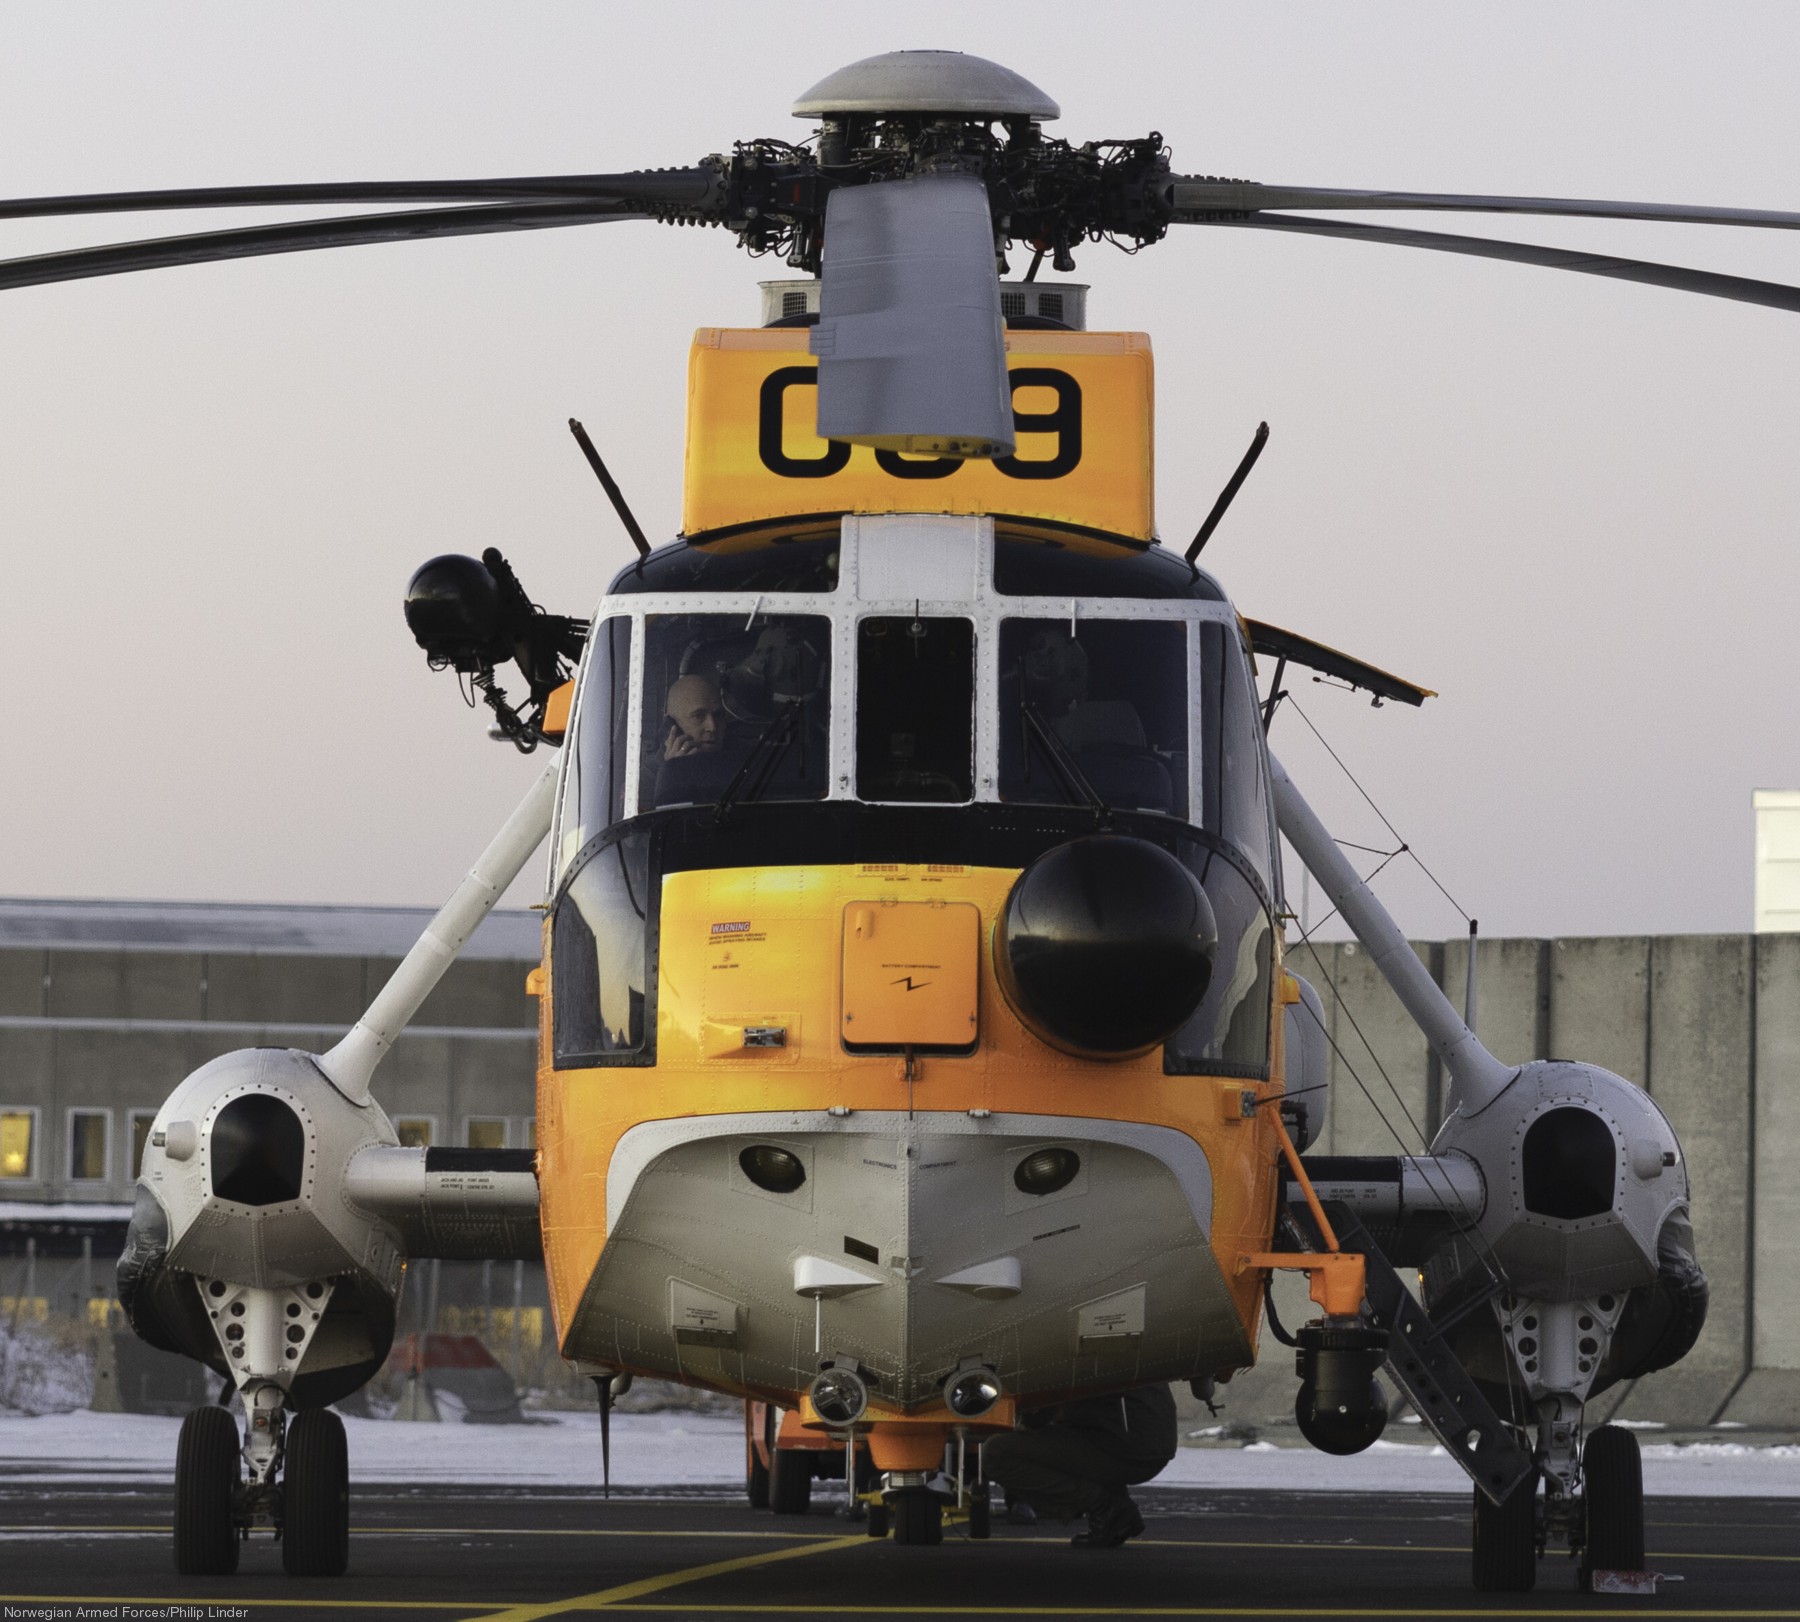 westland ws-61 sea king royal norwegian air force sar rescue 330 squadron skvadron luftforsvaret 069 03